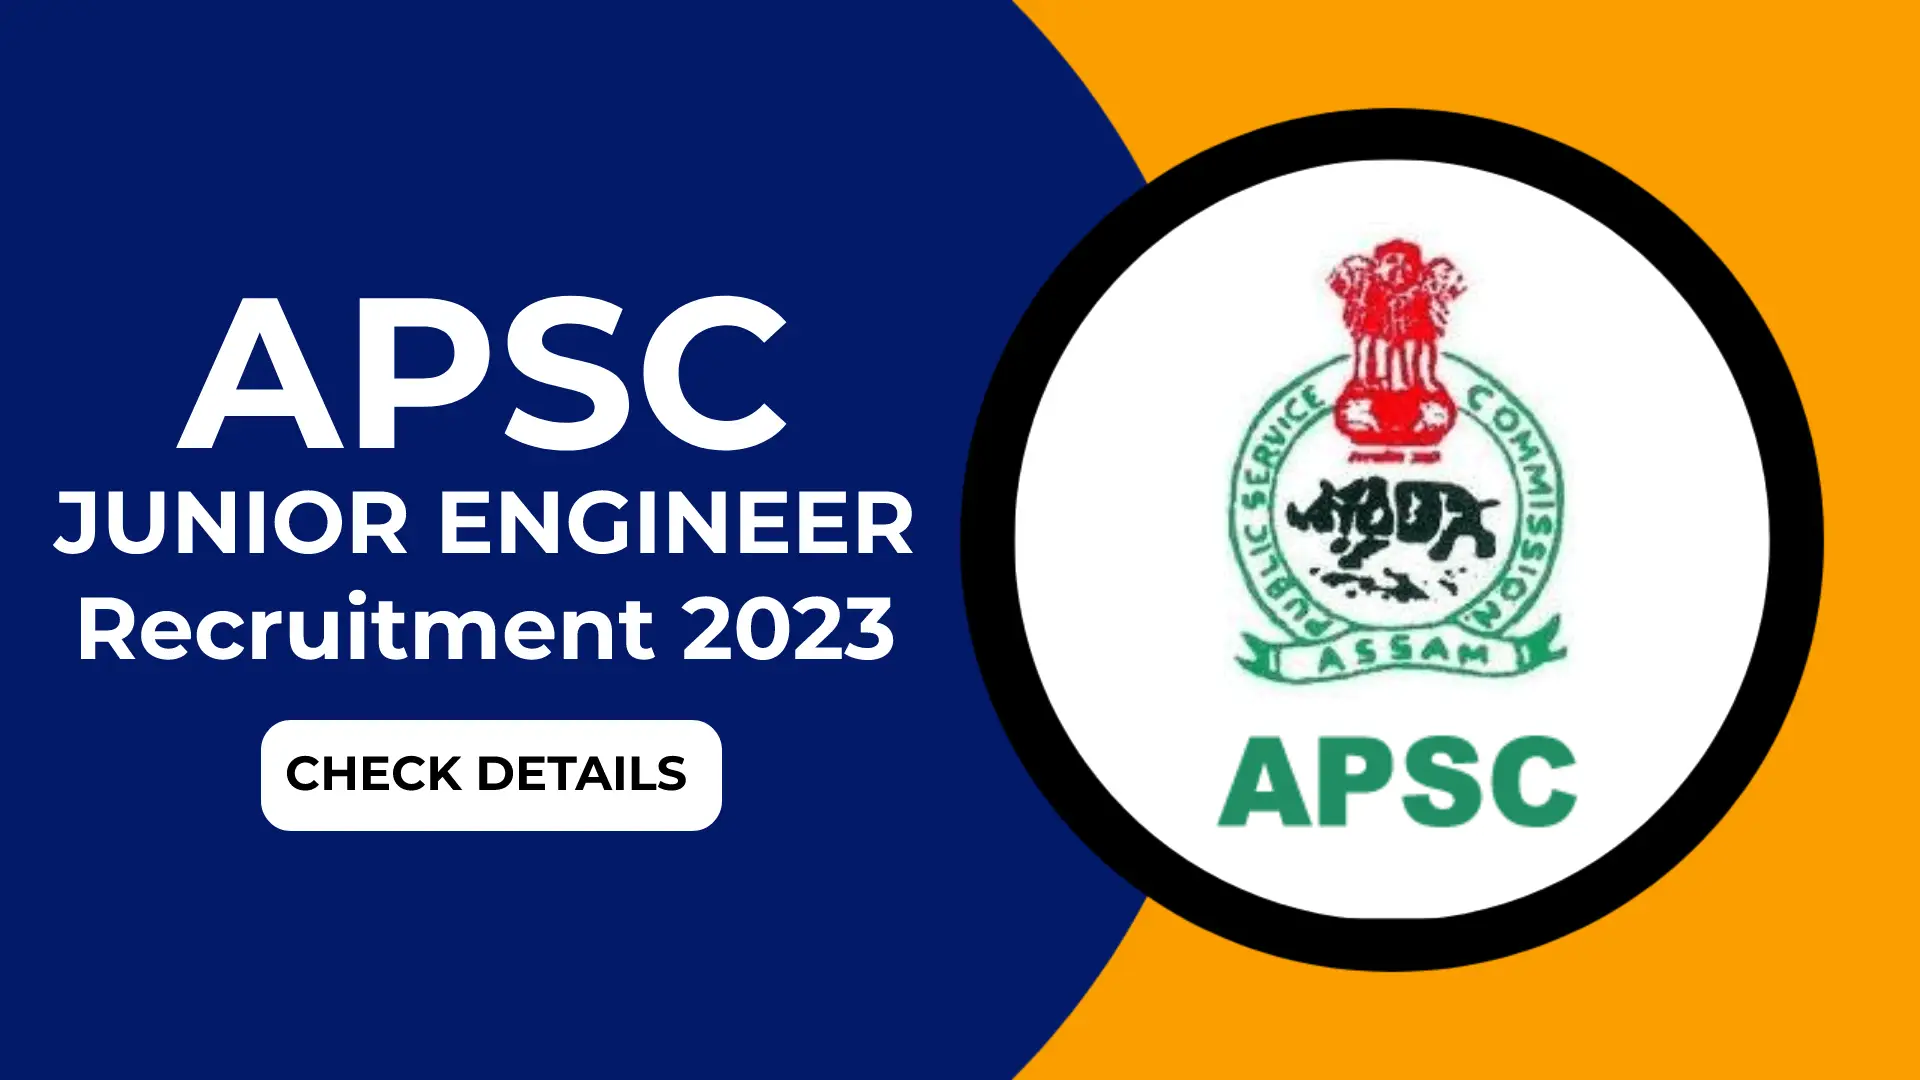 APSC Junior Engineer Recruitment 2023